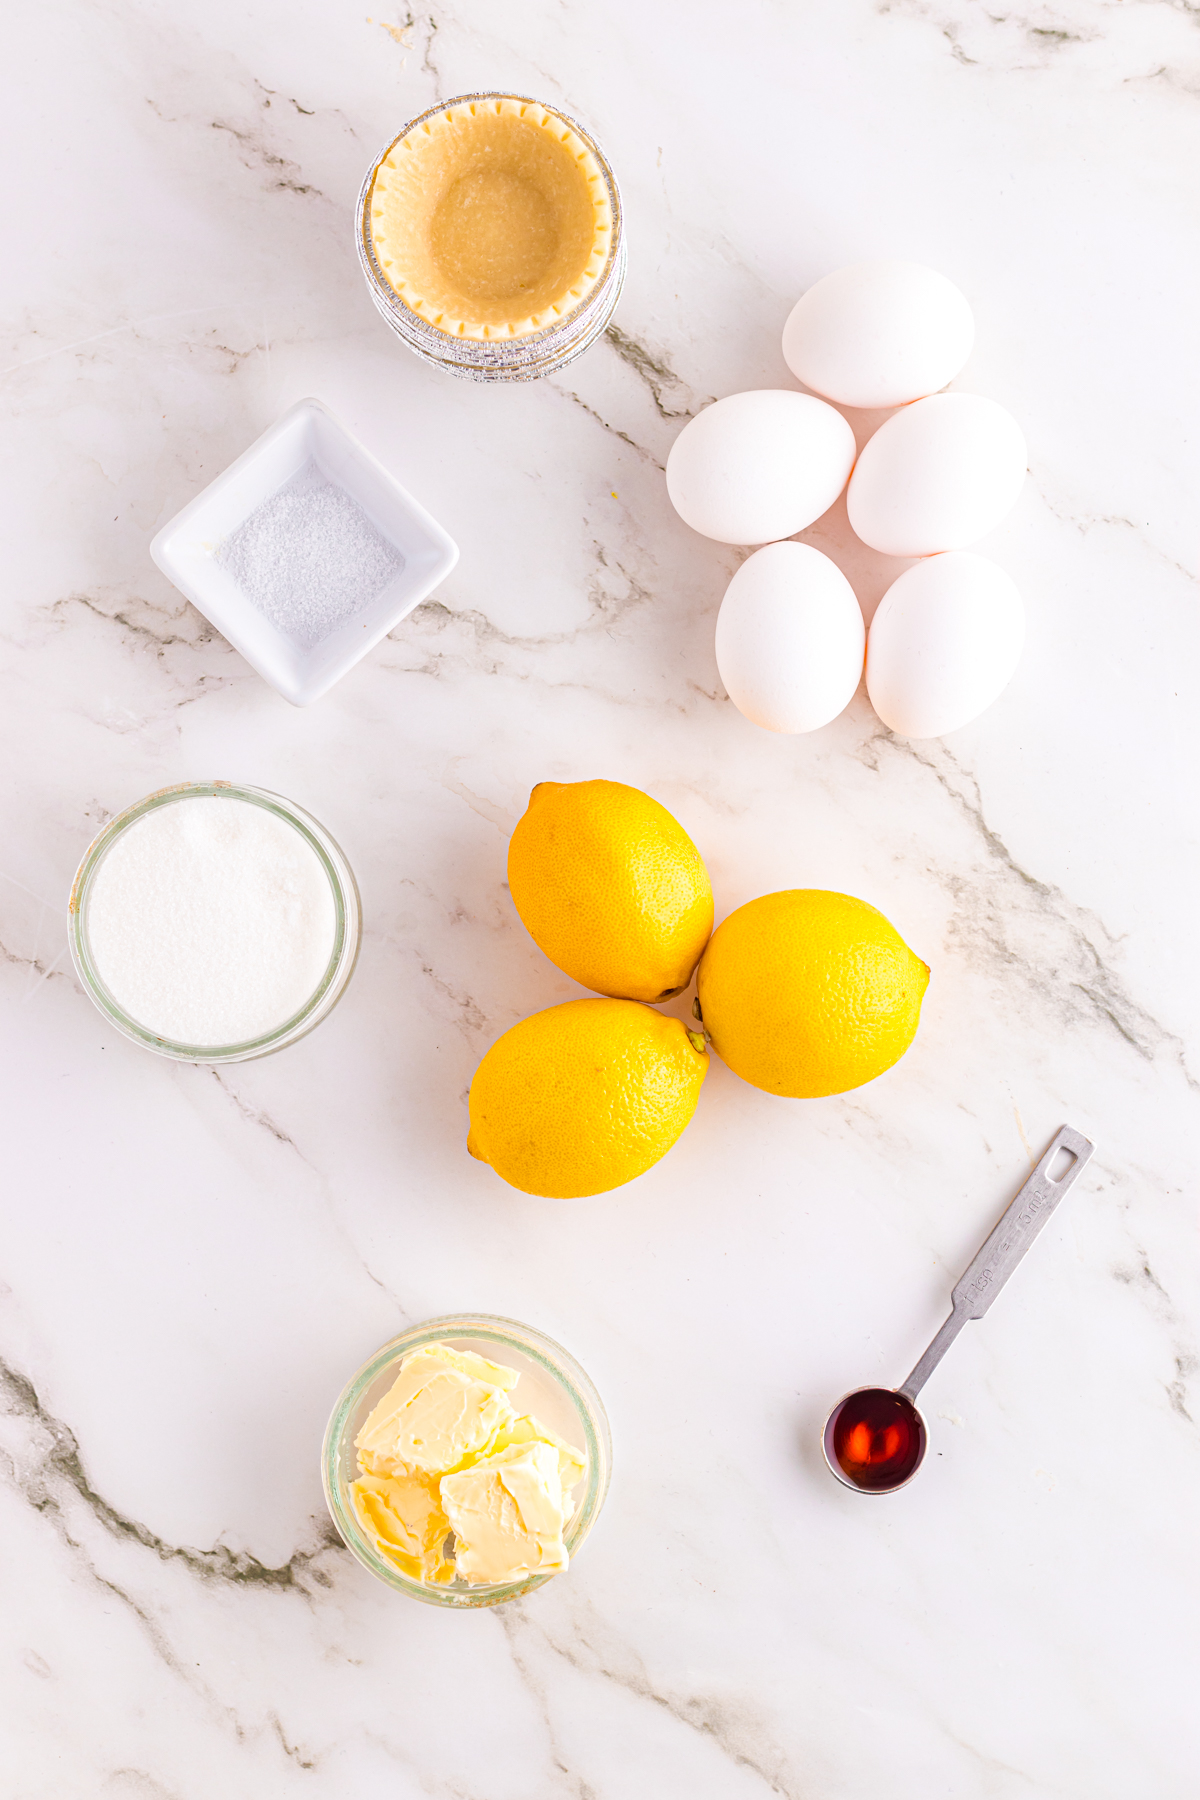 Ingredients for lemon tarts.